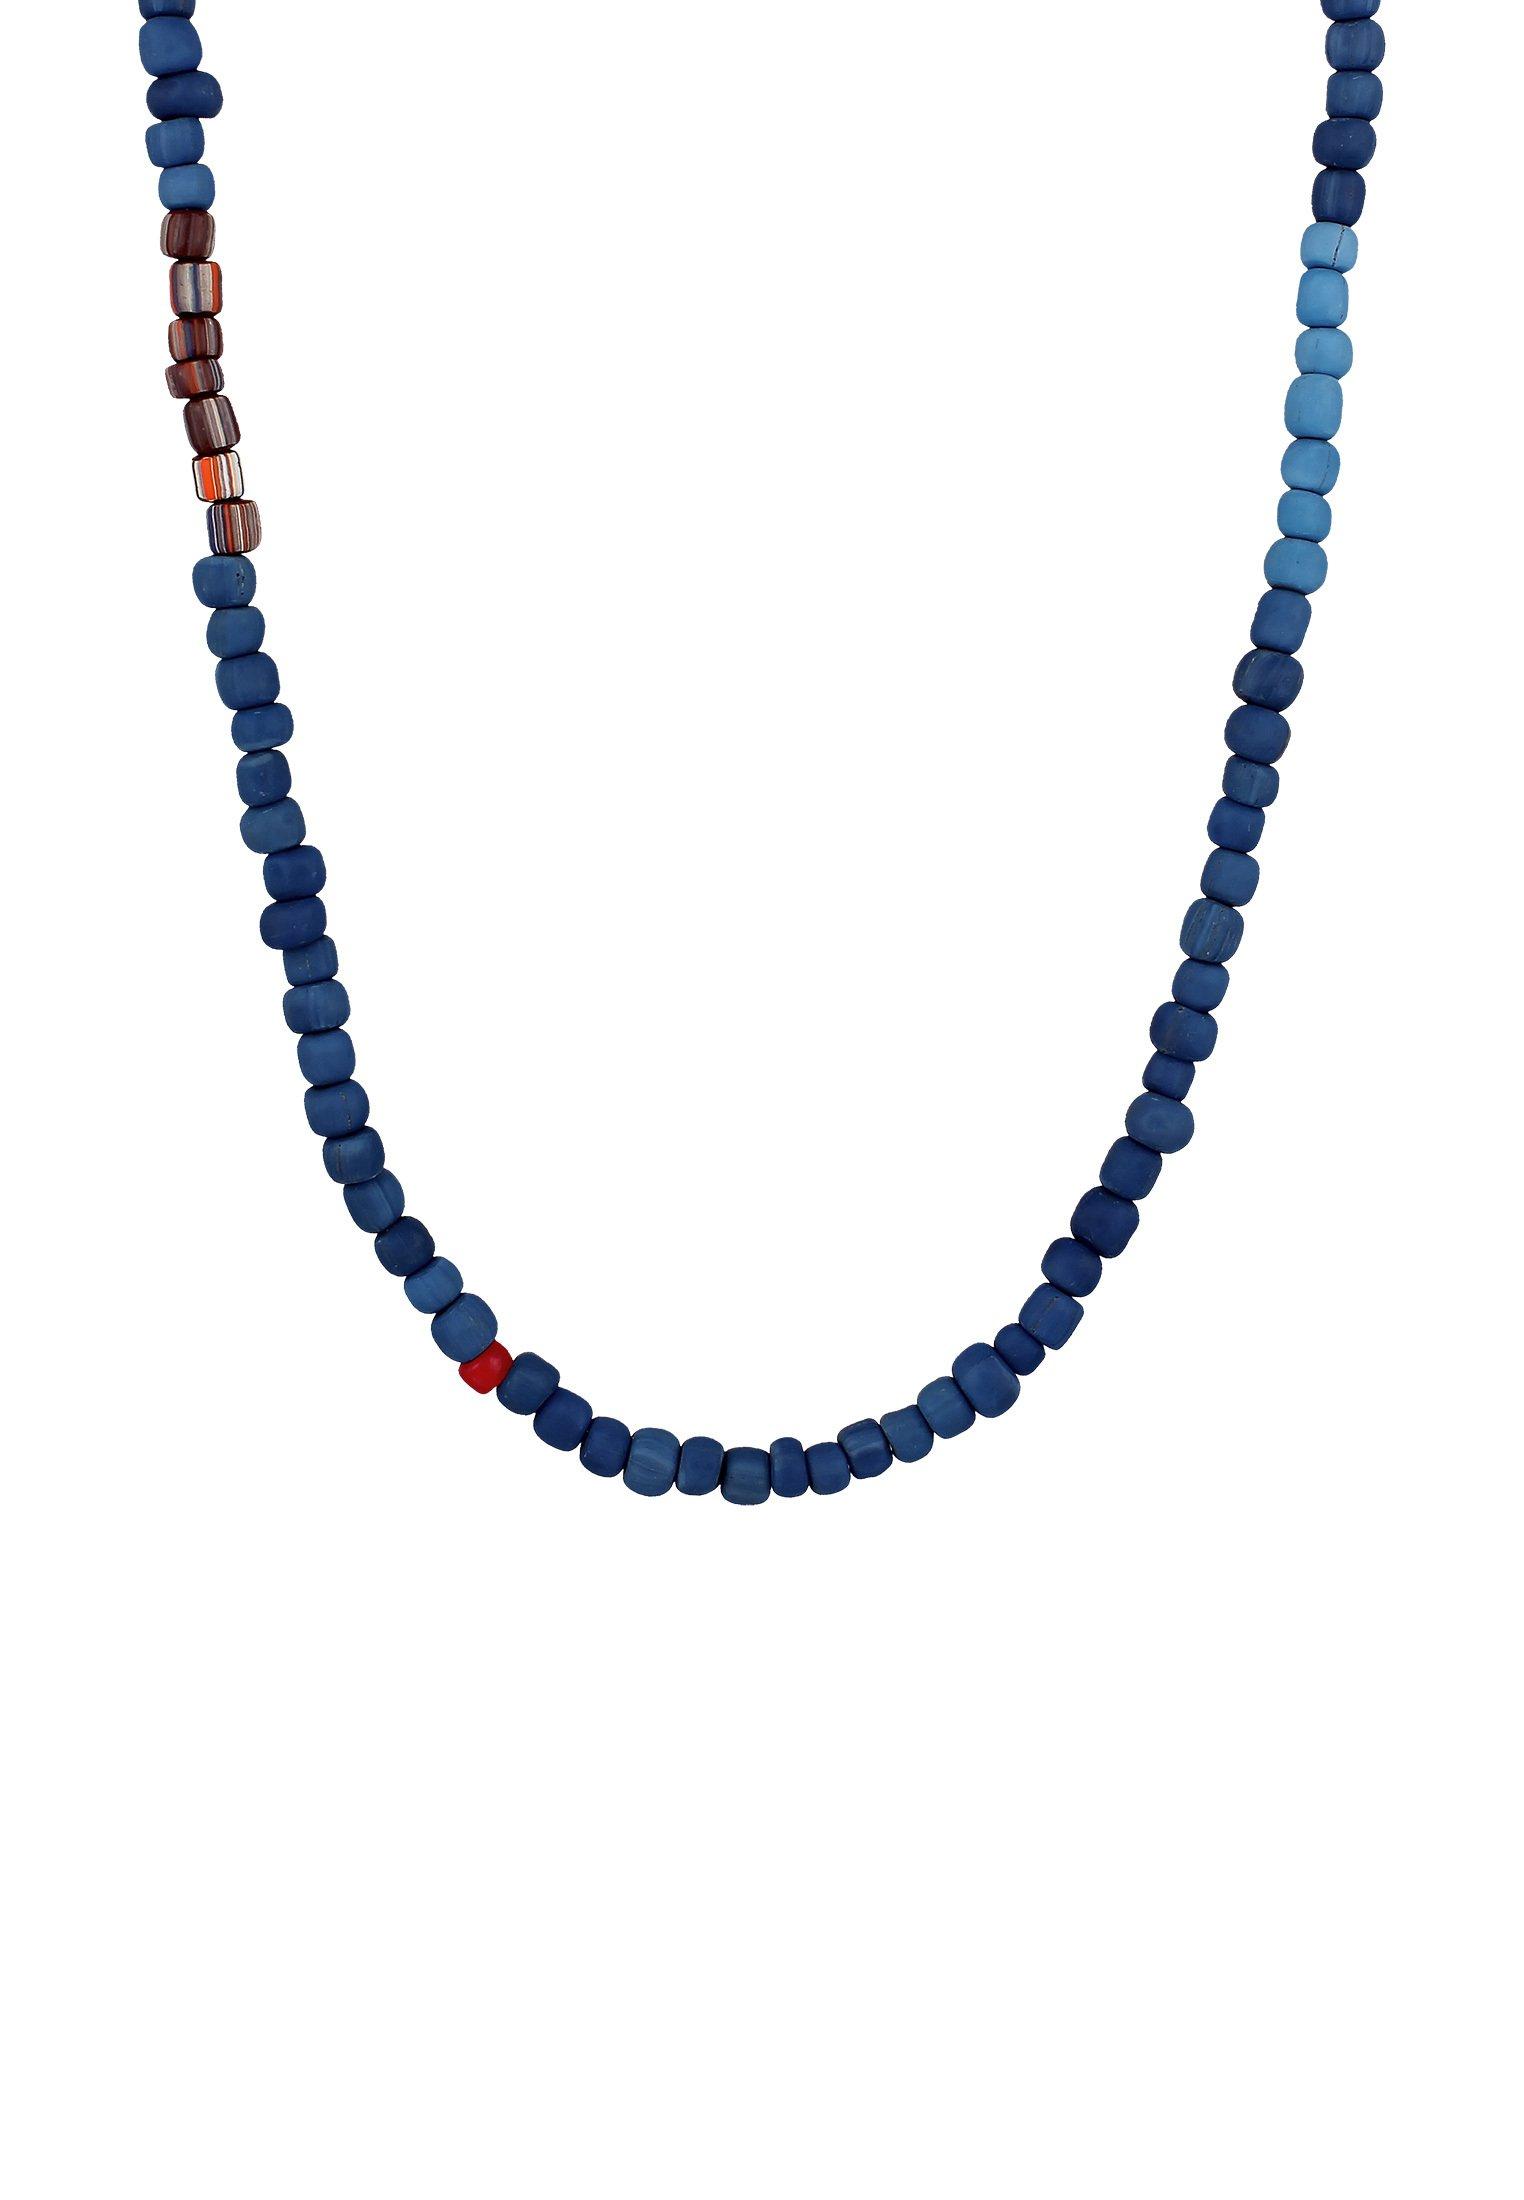 Kuzzoi Halskette Glas Beads Urban Style 925 Silber | online kaufen - MANOR